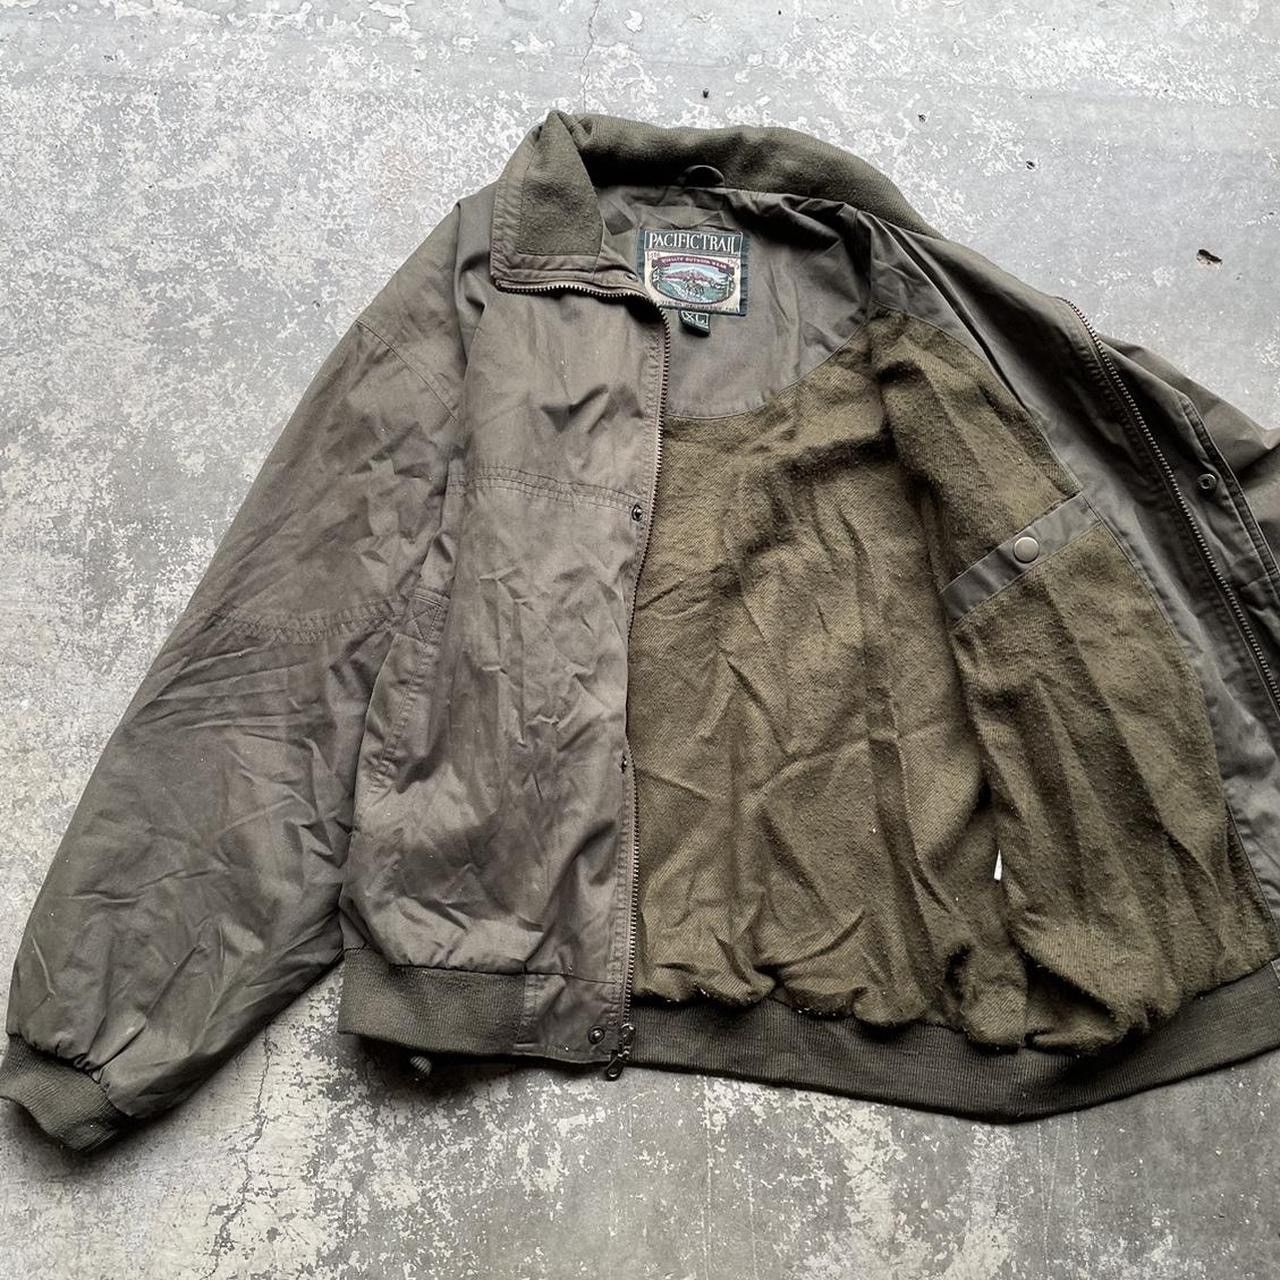 Pacific Trail gorpcore streetwear pacific trail bomber jacket size XL Size US XL / EU 56 / 4 - 4 Thumbnail